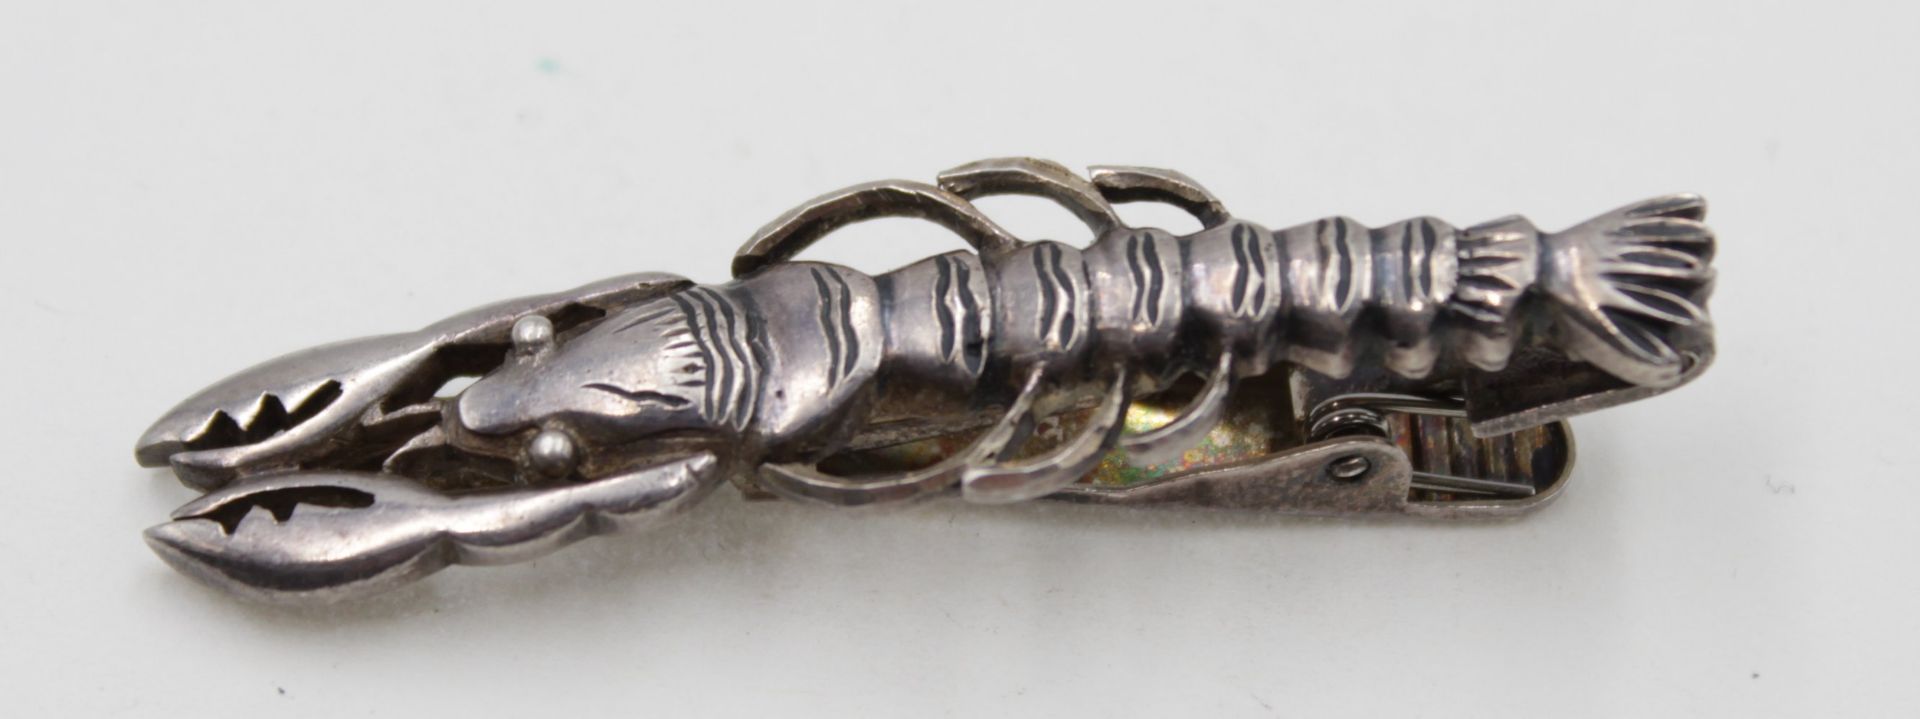 Kravattenklammer o.ä., Hummerform, 925er Silber, 12,9gr. , L-5,8cm.